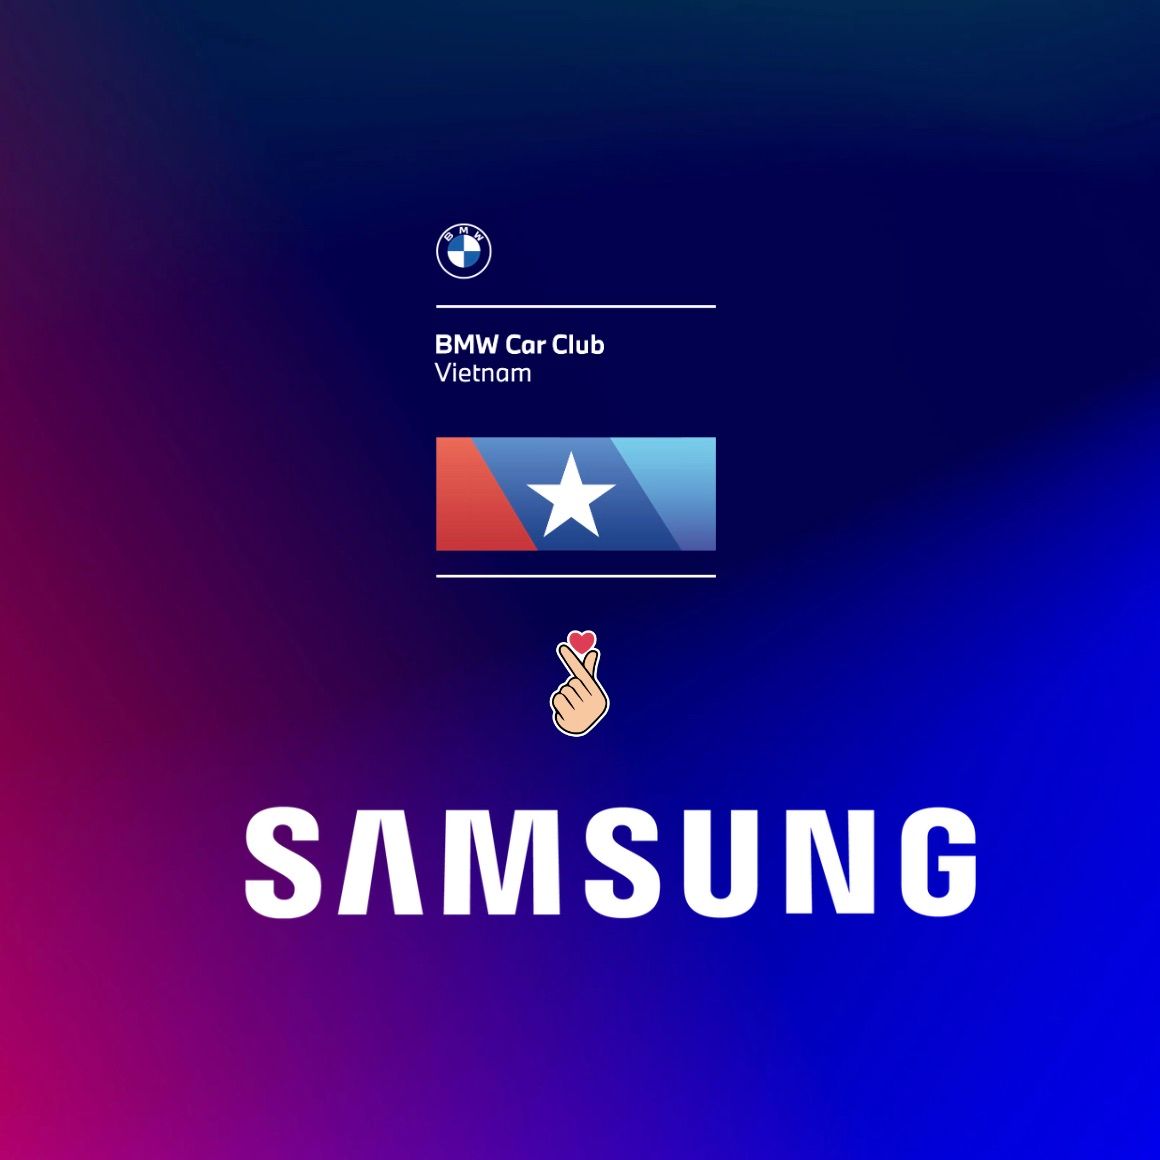 Samsung TV hân hạnh đồng hành cùng BMW Club Việt Nam